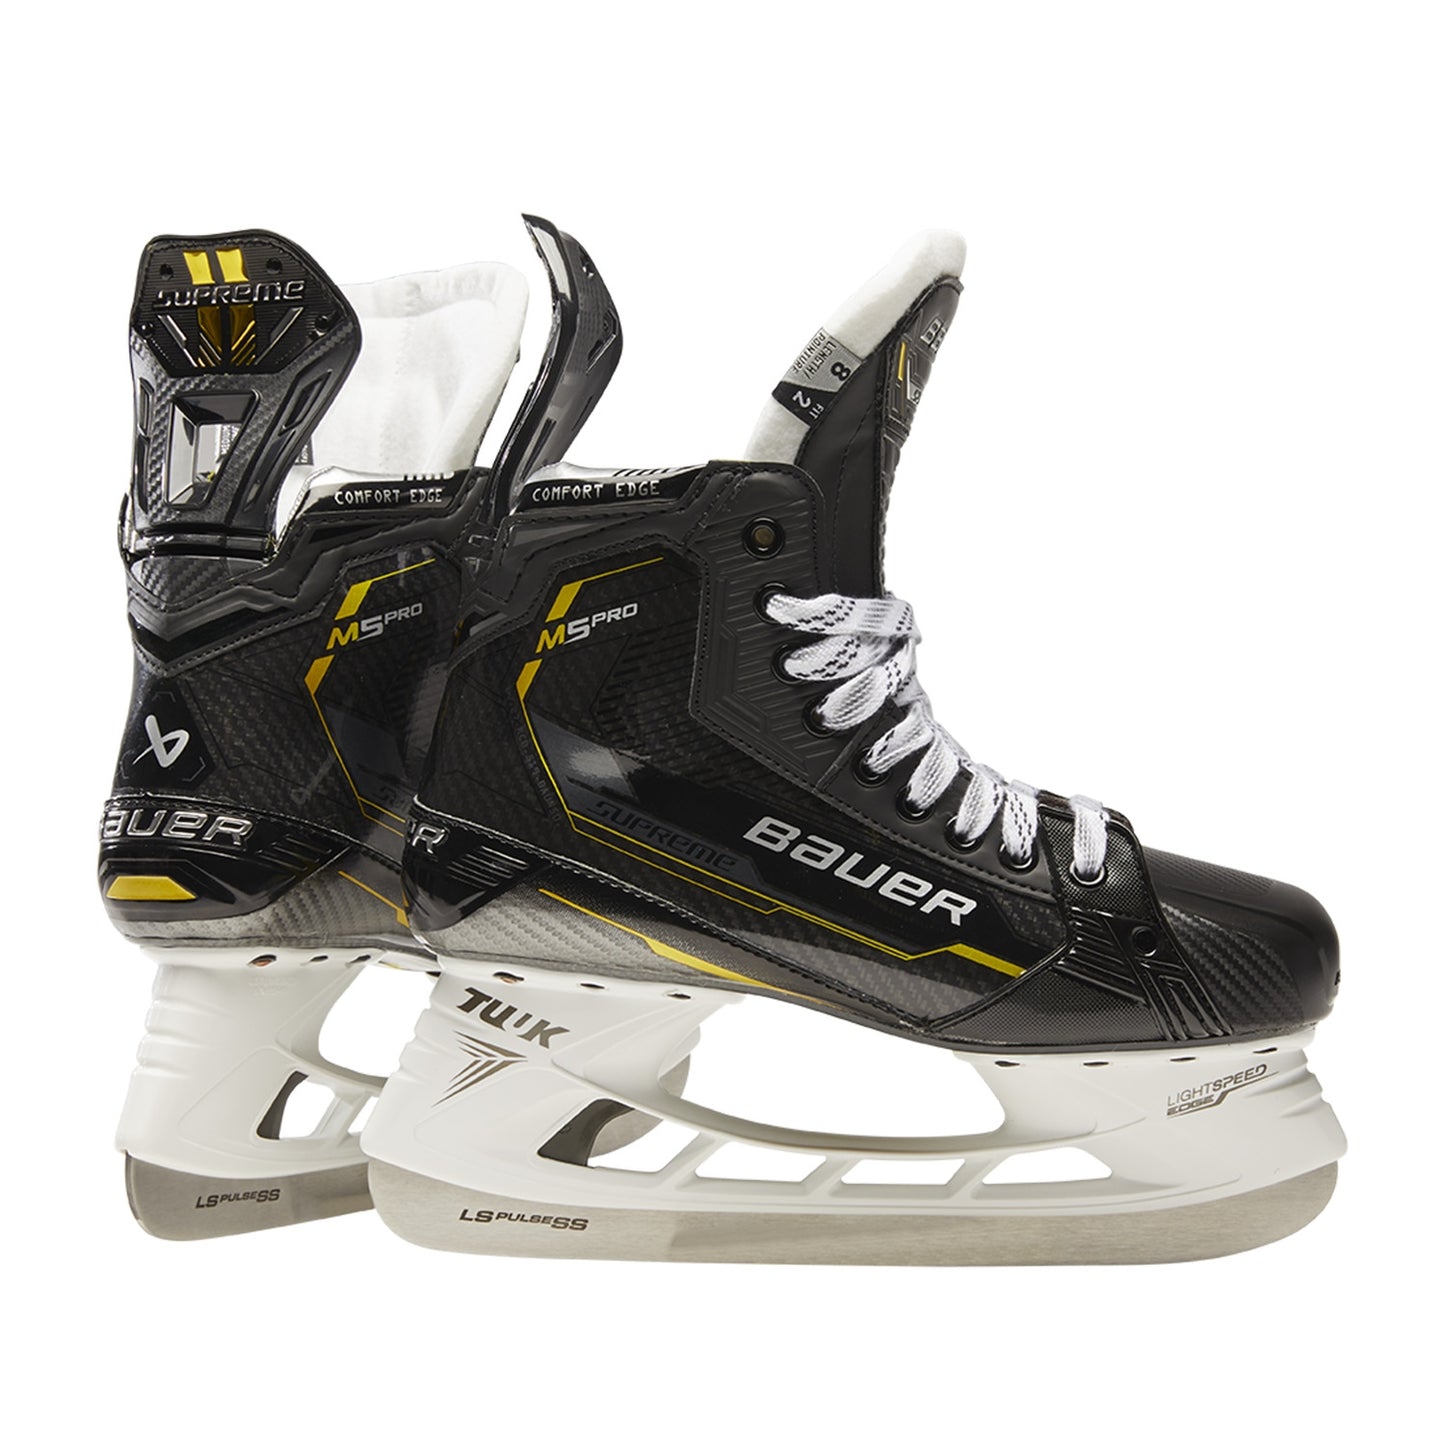 Bauer Supreme M5 Pro SR skates